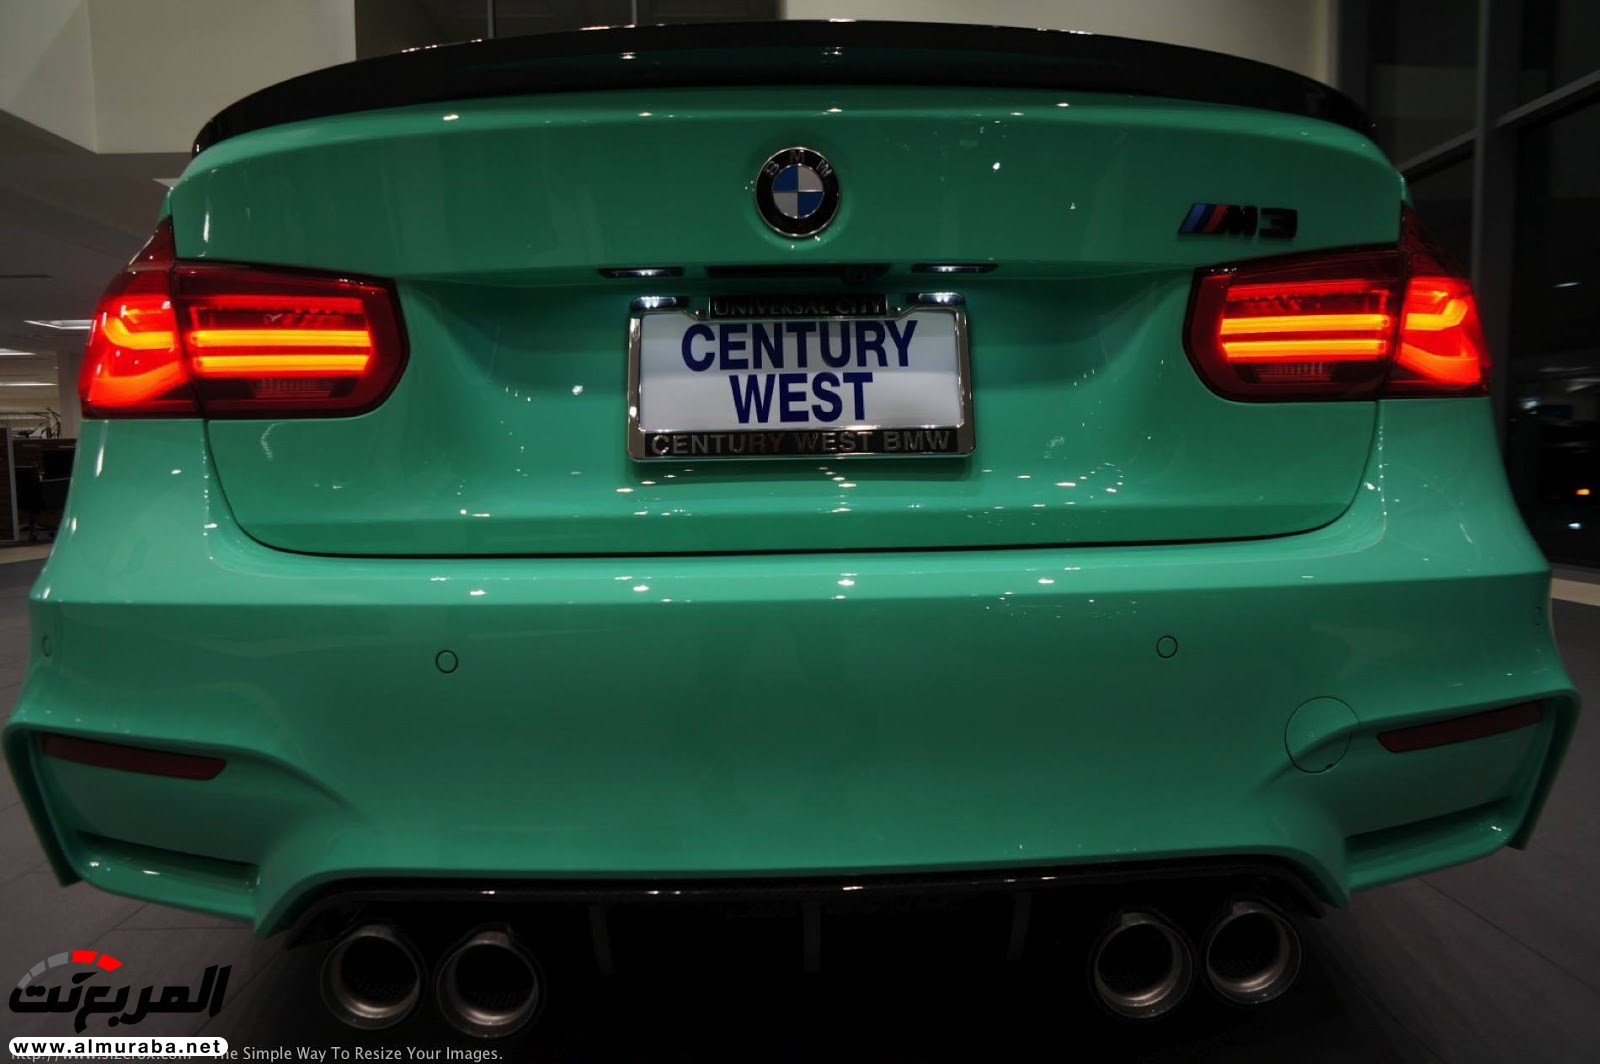 "بالصور" شاهد "بي إم دبليو" F80 M3 الخاصة بطلاء النعناع الأخضر BMW 100